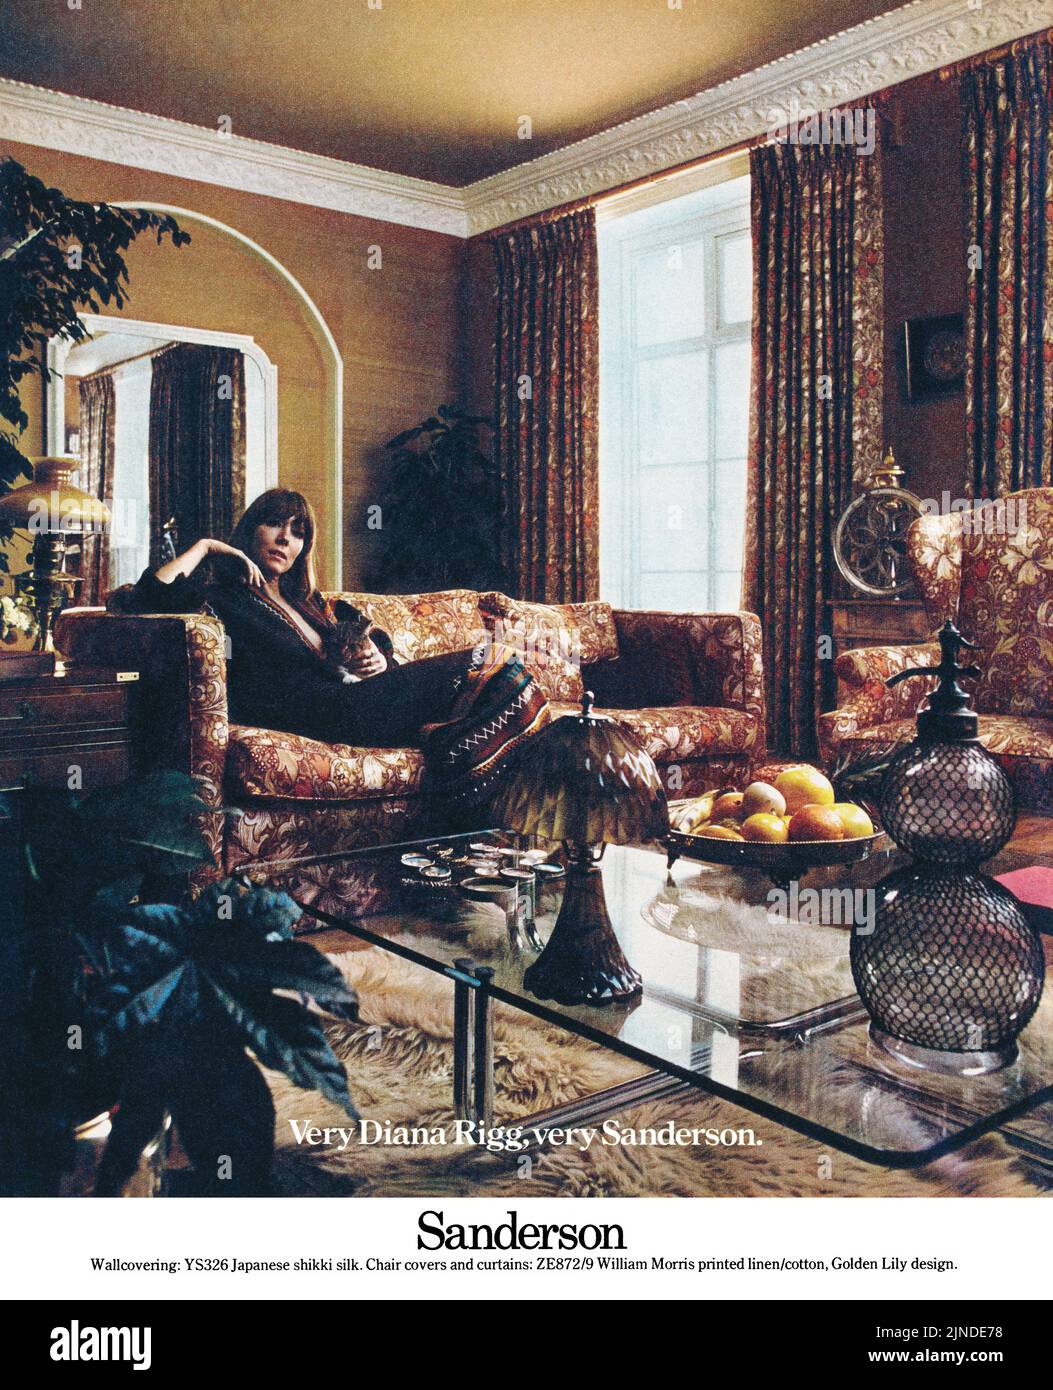 1975 Britische Werbung für Sanderson Möbelstoffe mit Schauspielerin Diana Rigg. Stockfoto